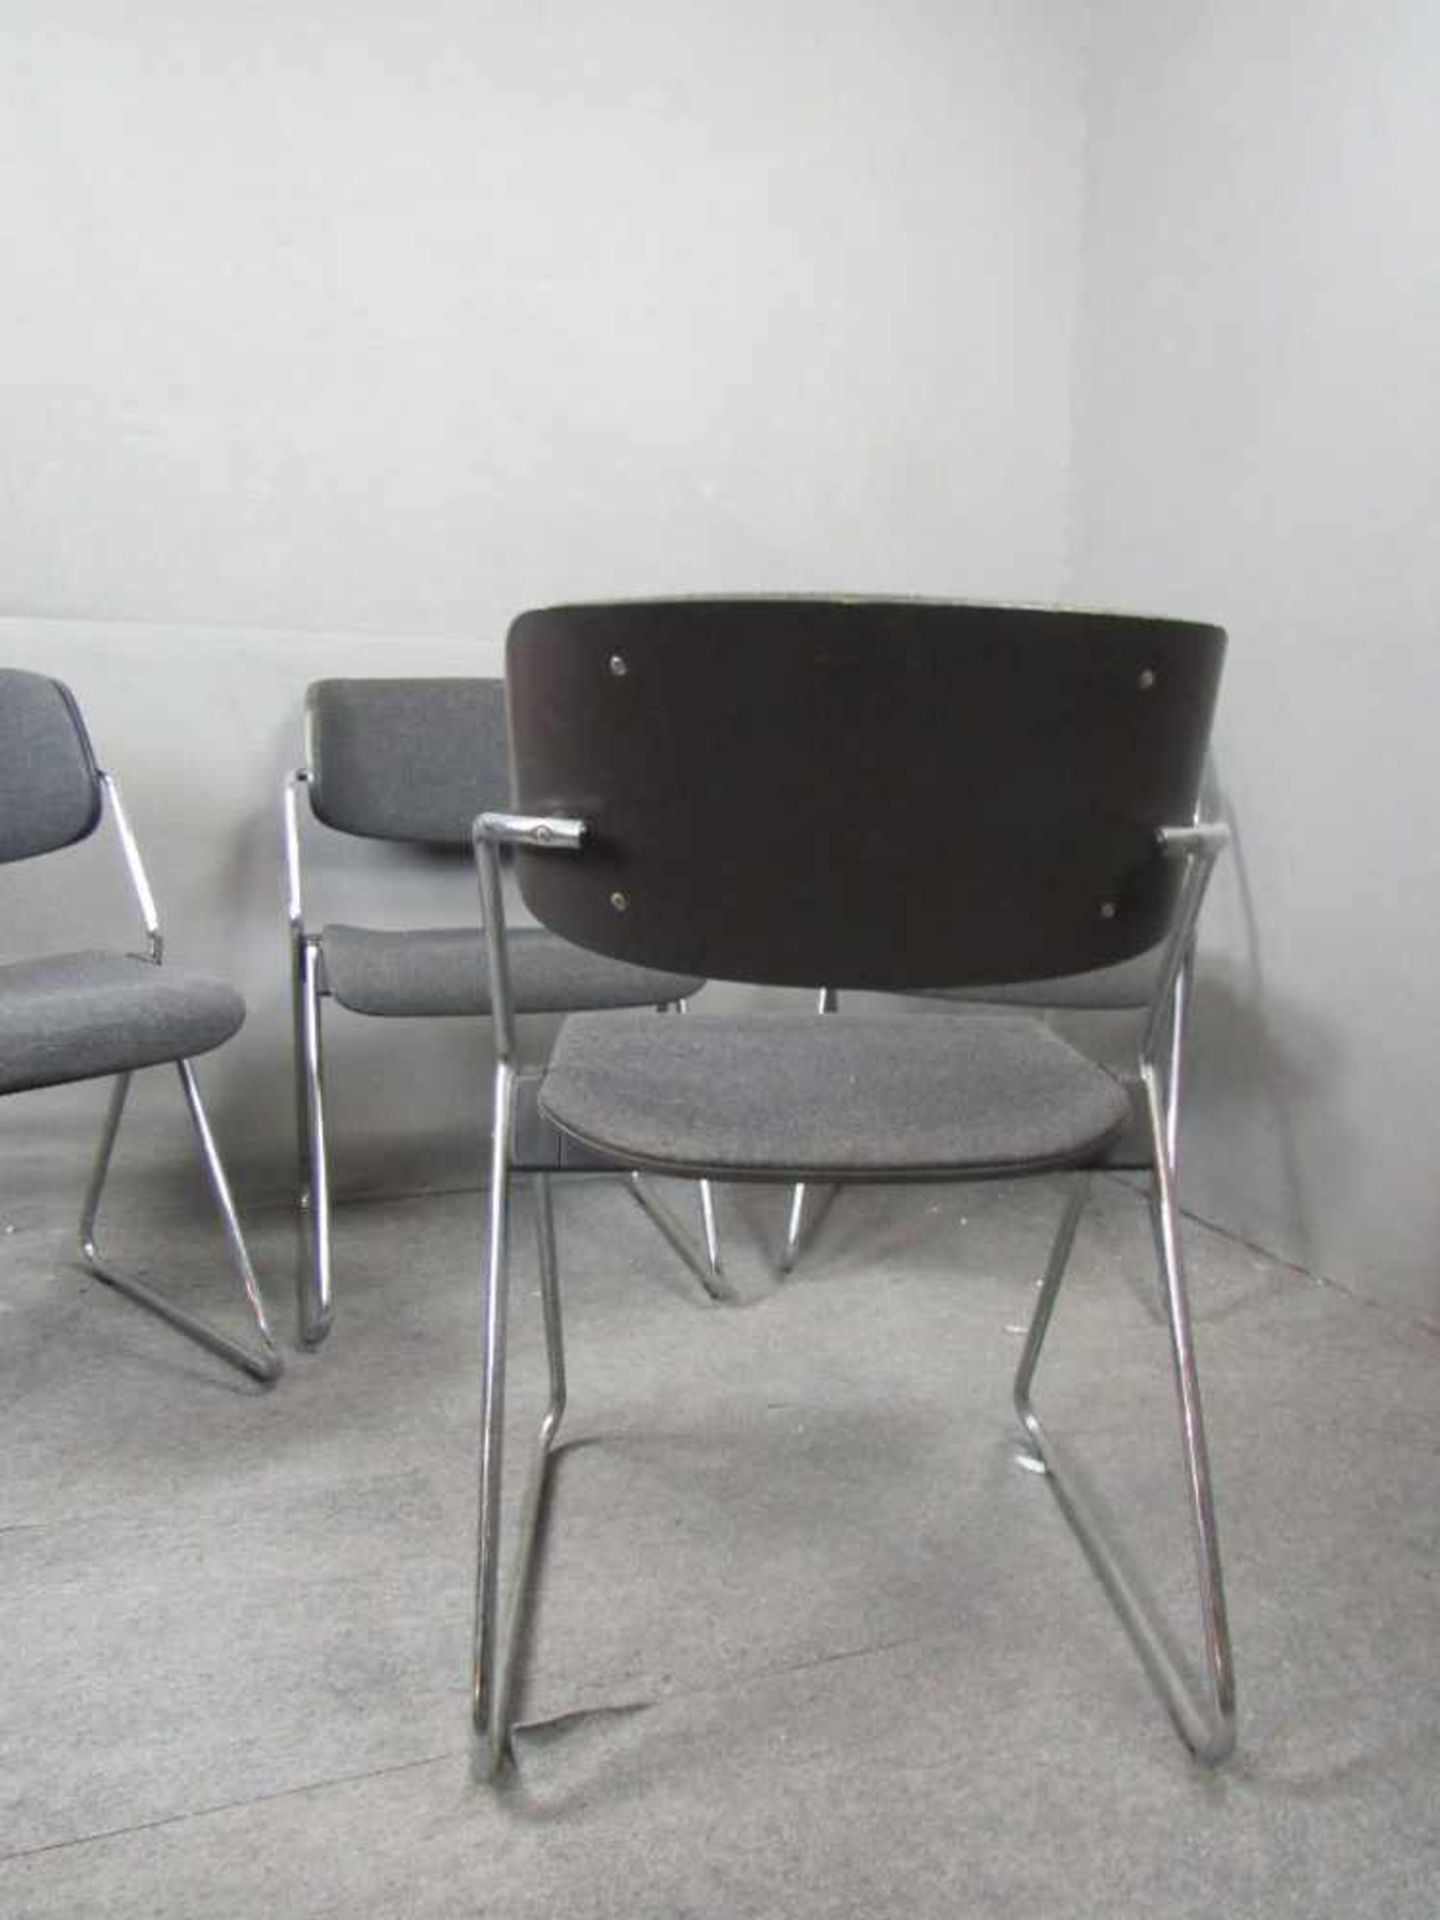 Space Age 60er Jahre vier Designerstühle gepolstert auf Chromgestell Hersteller Wilkhan stapelbar- - - Image 3 of 3